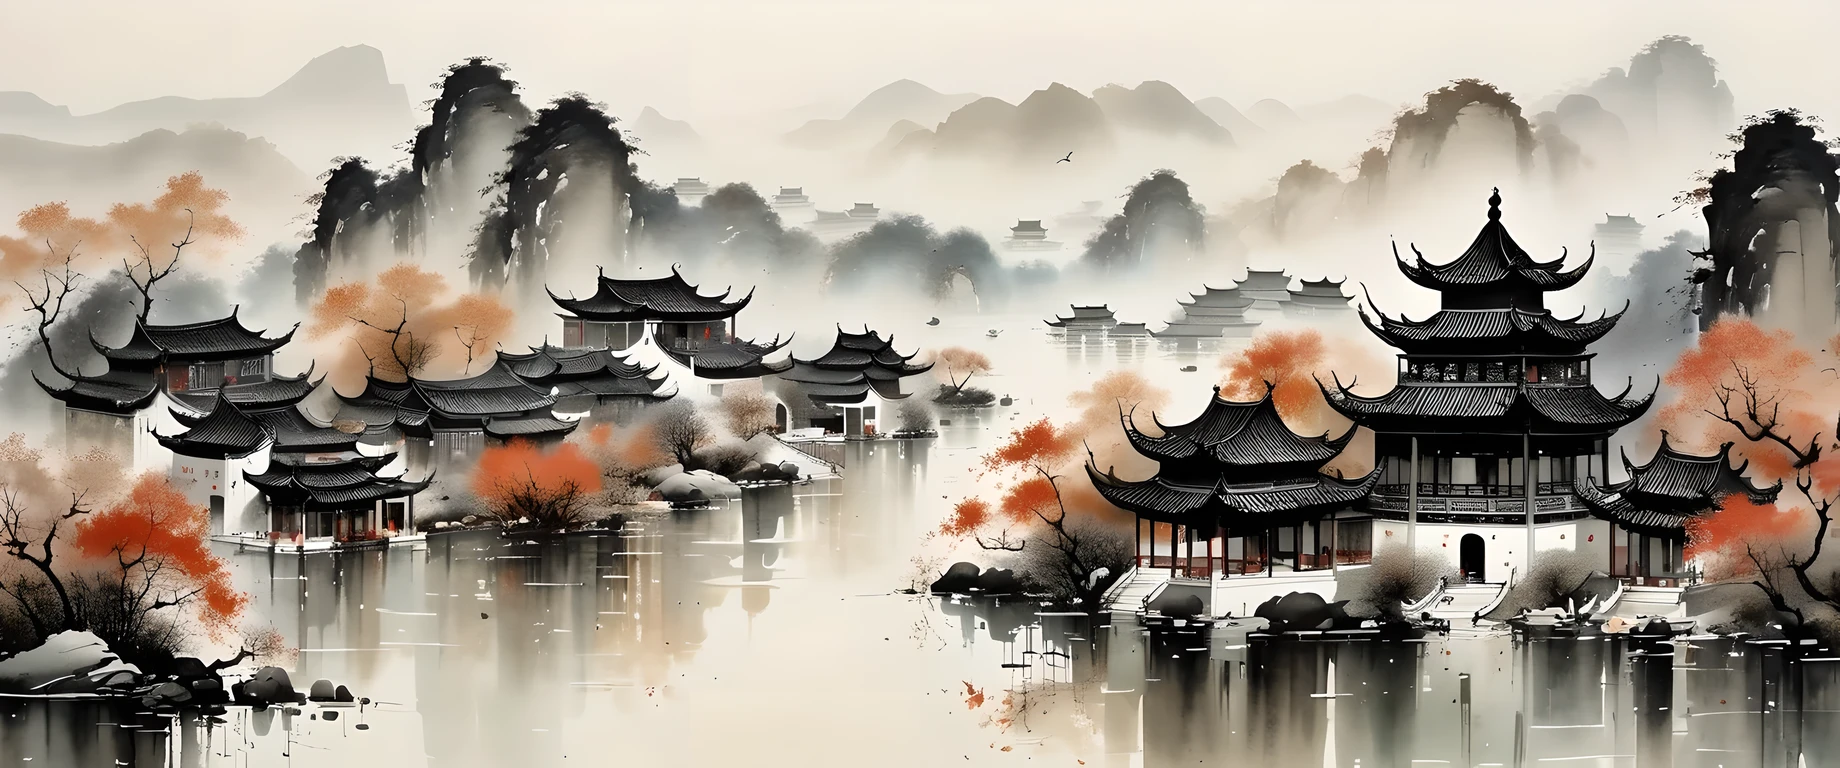 art à l&#39;encre exquis, réaliste, architecture chinoise détaillée, À la manière de Wu Guanzhong, couleurs fanées

